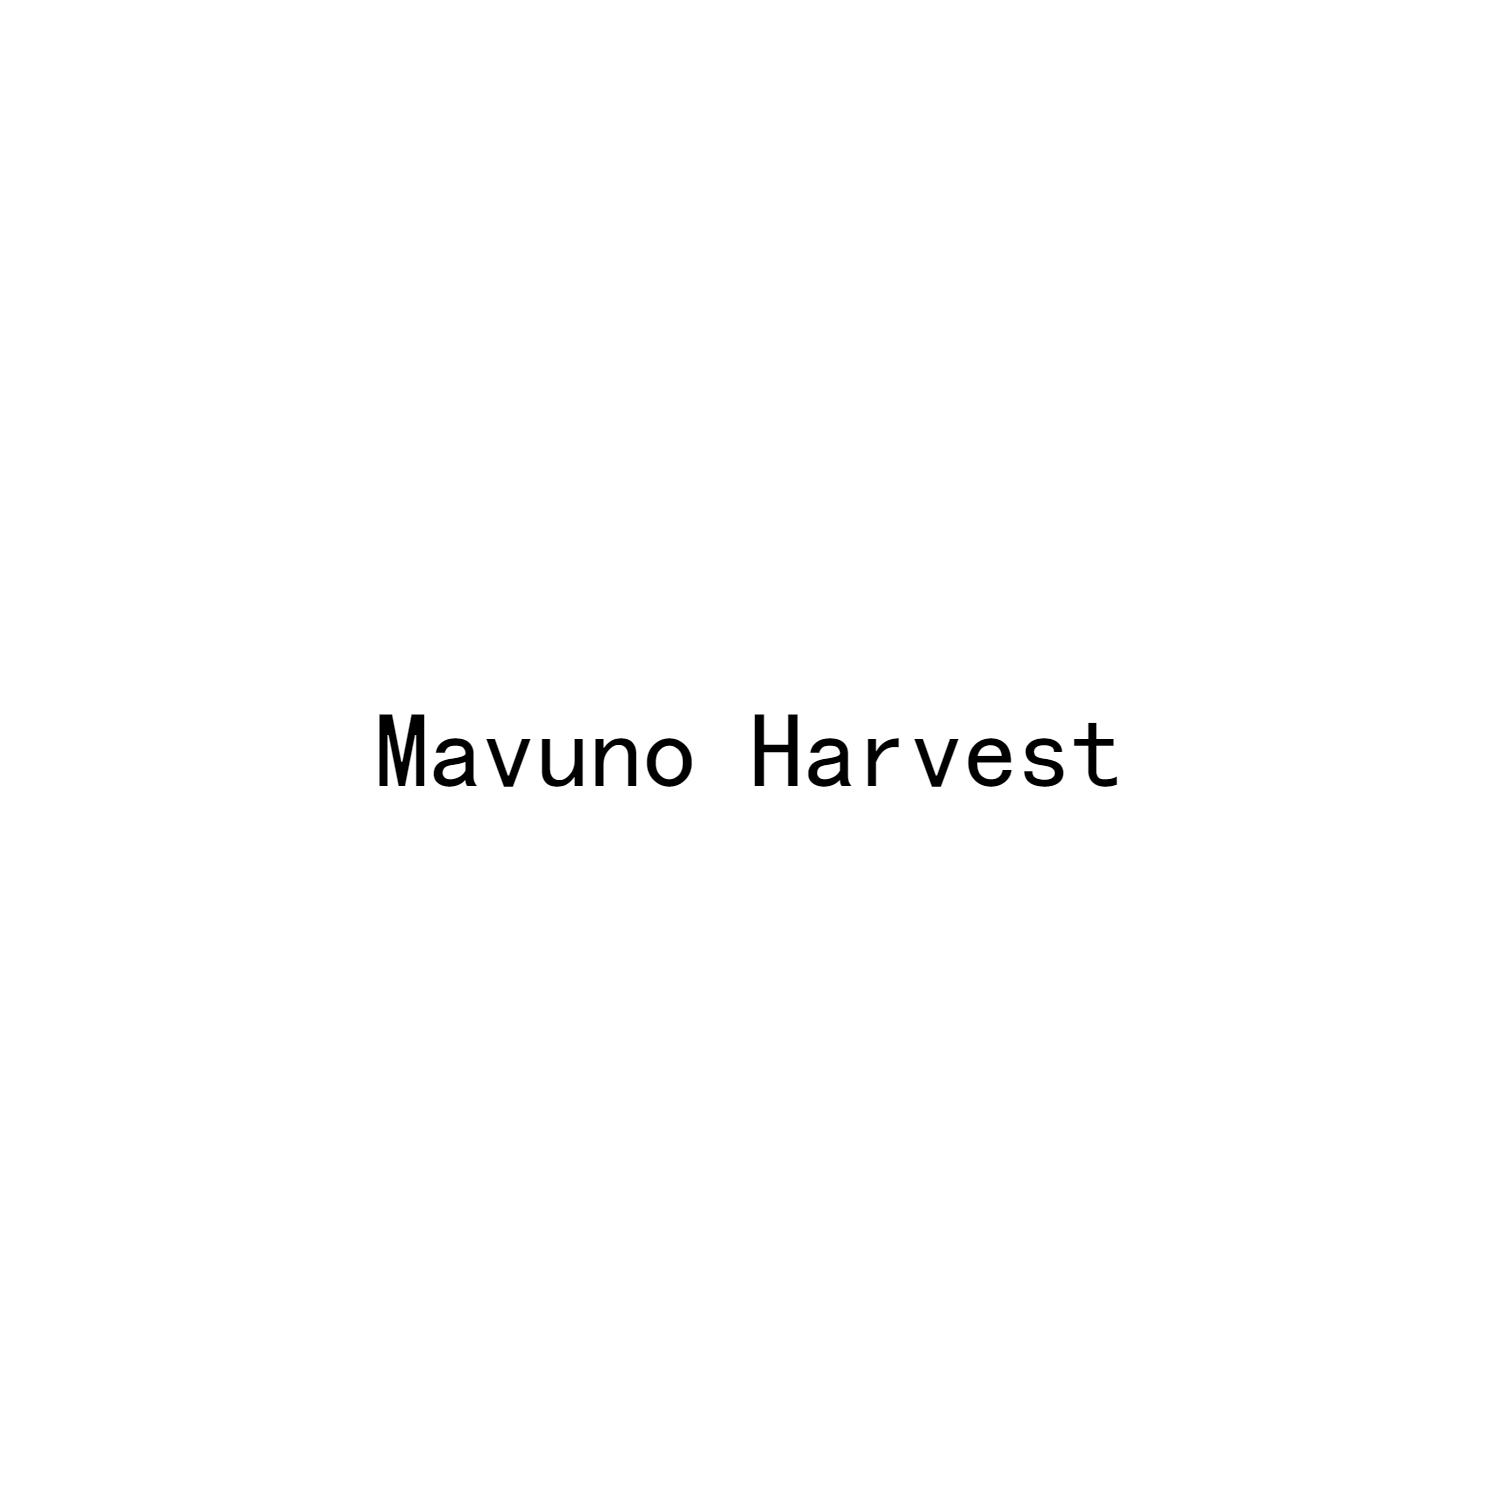 MAVUNO HARVEST